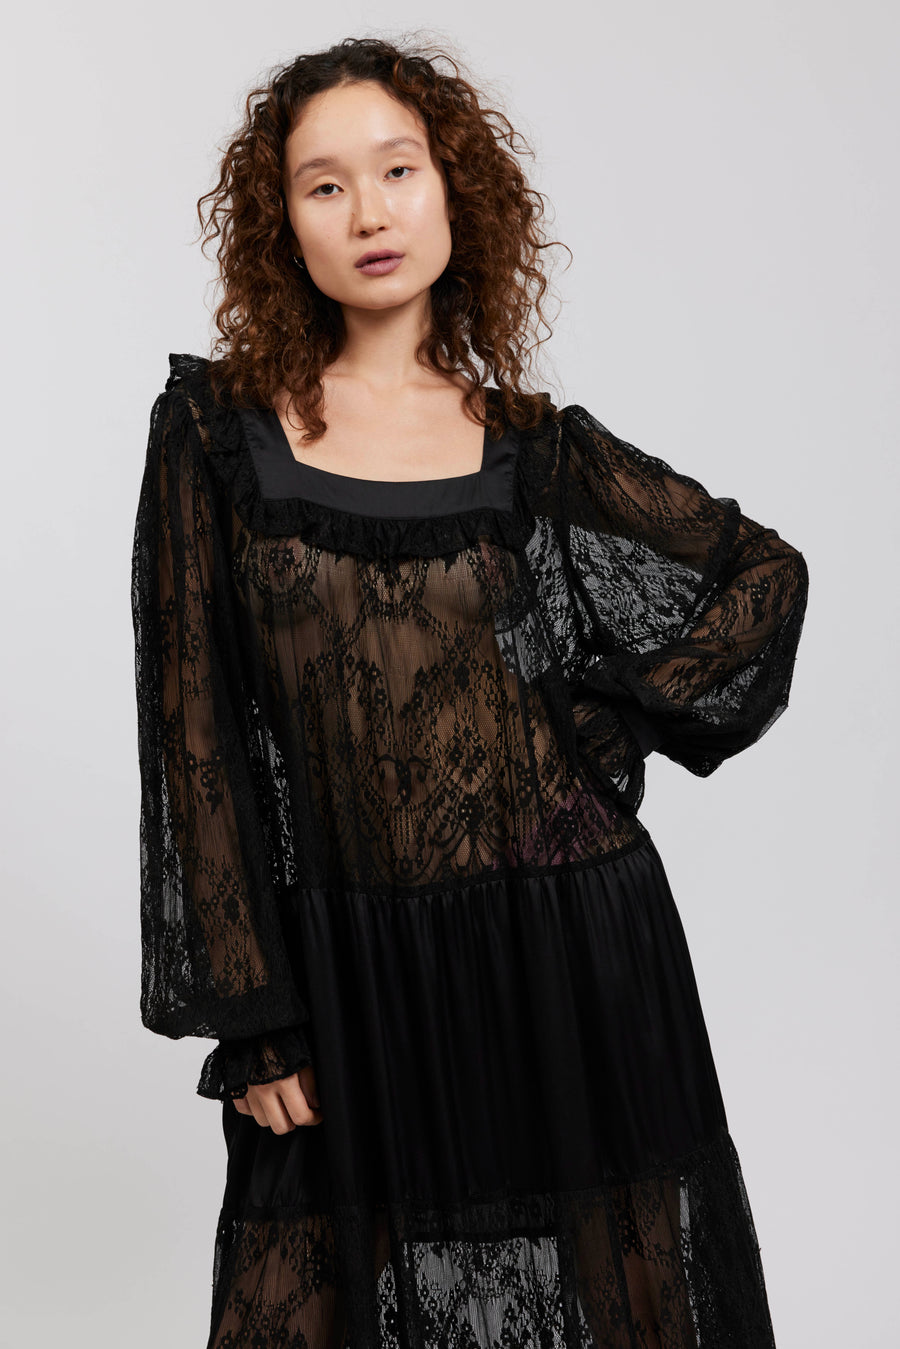 BATSHEVA - Phoebe Dress in Black Satin